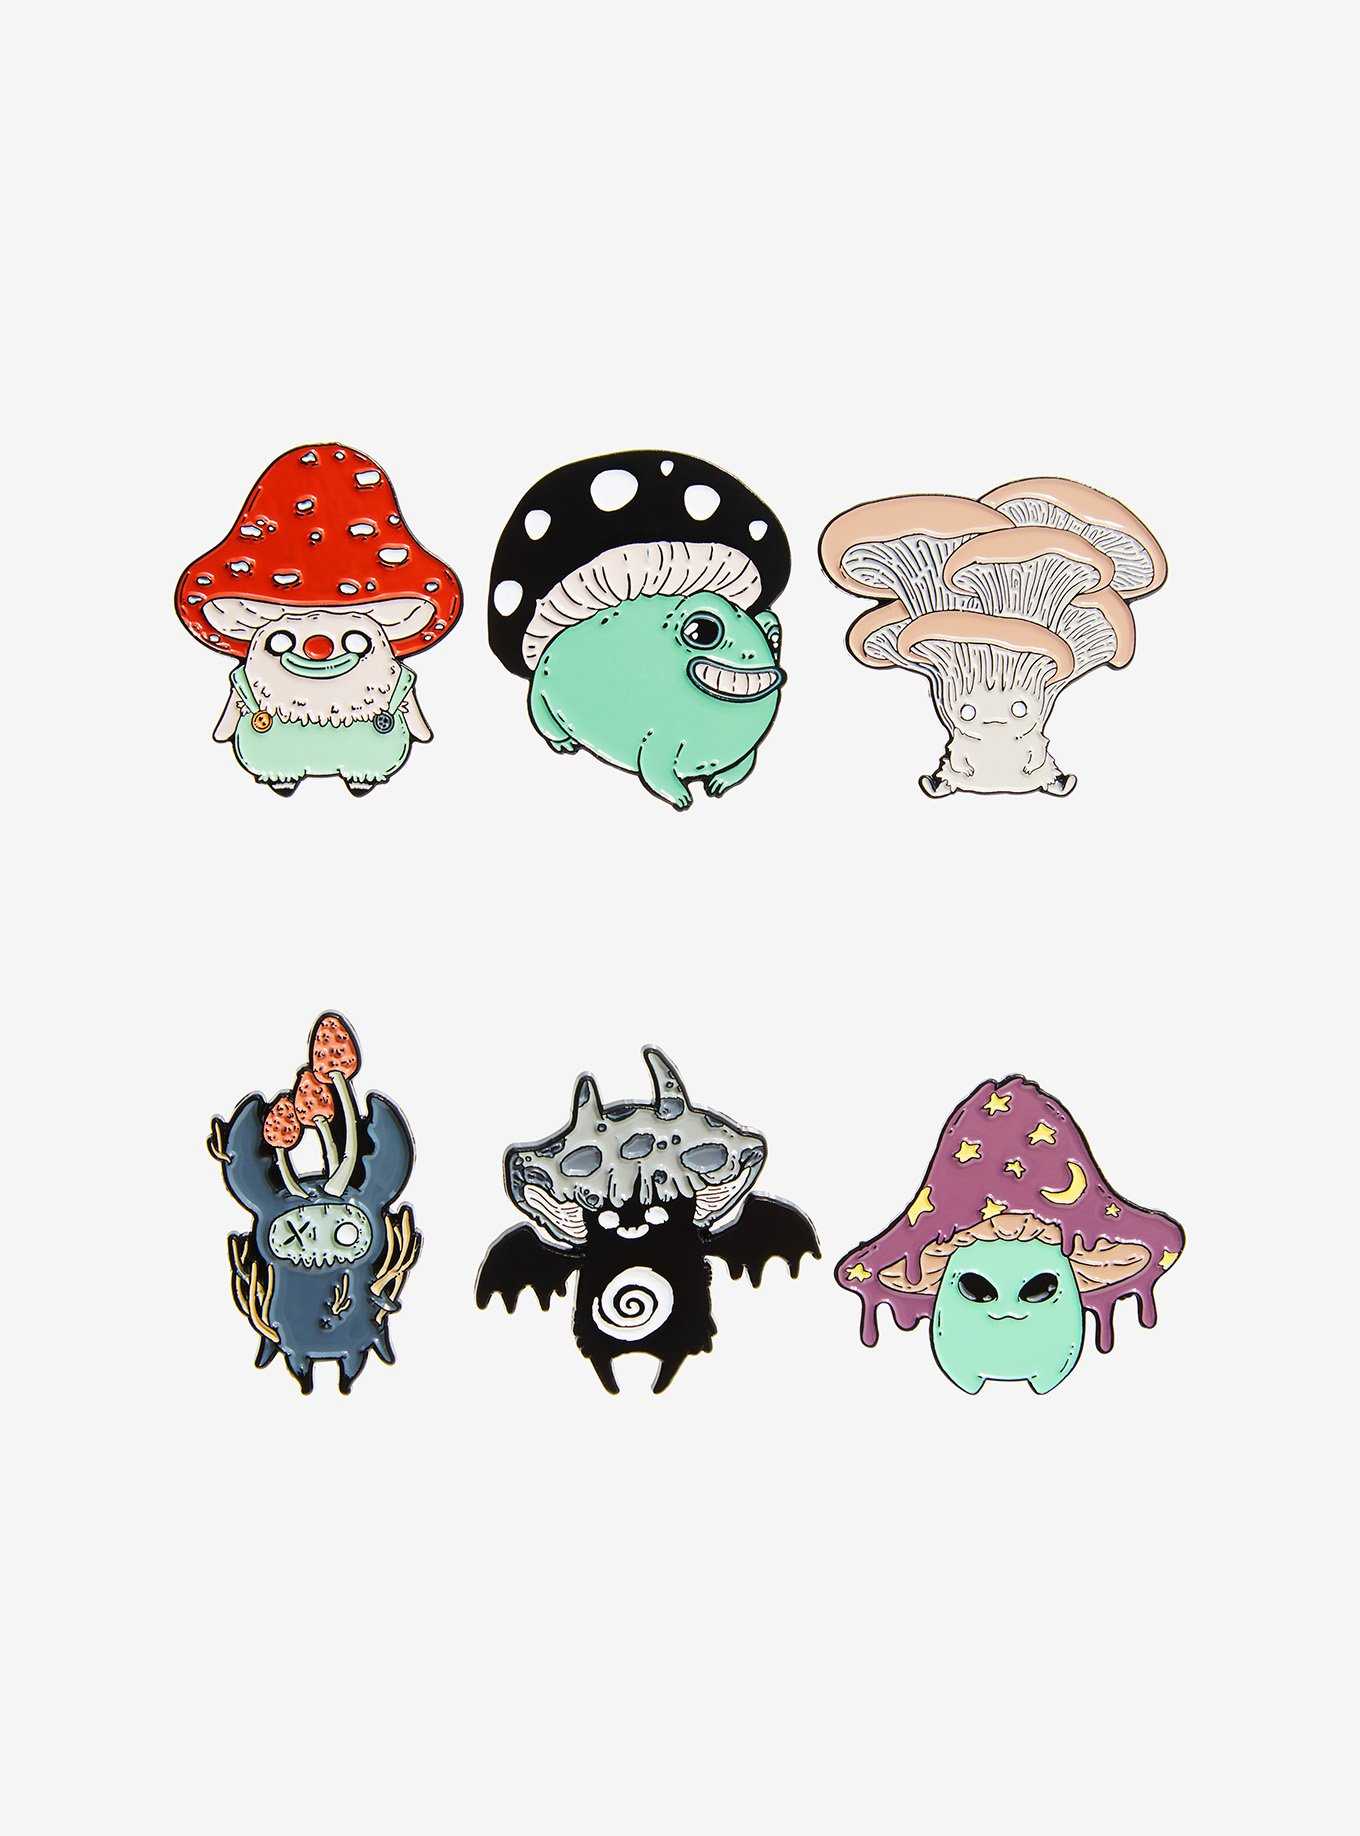 Guild Of Calamity Mushroom Creatures Blind Bag Enamel Pin, , hi-res